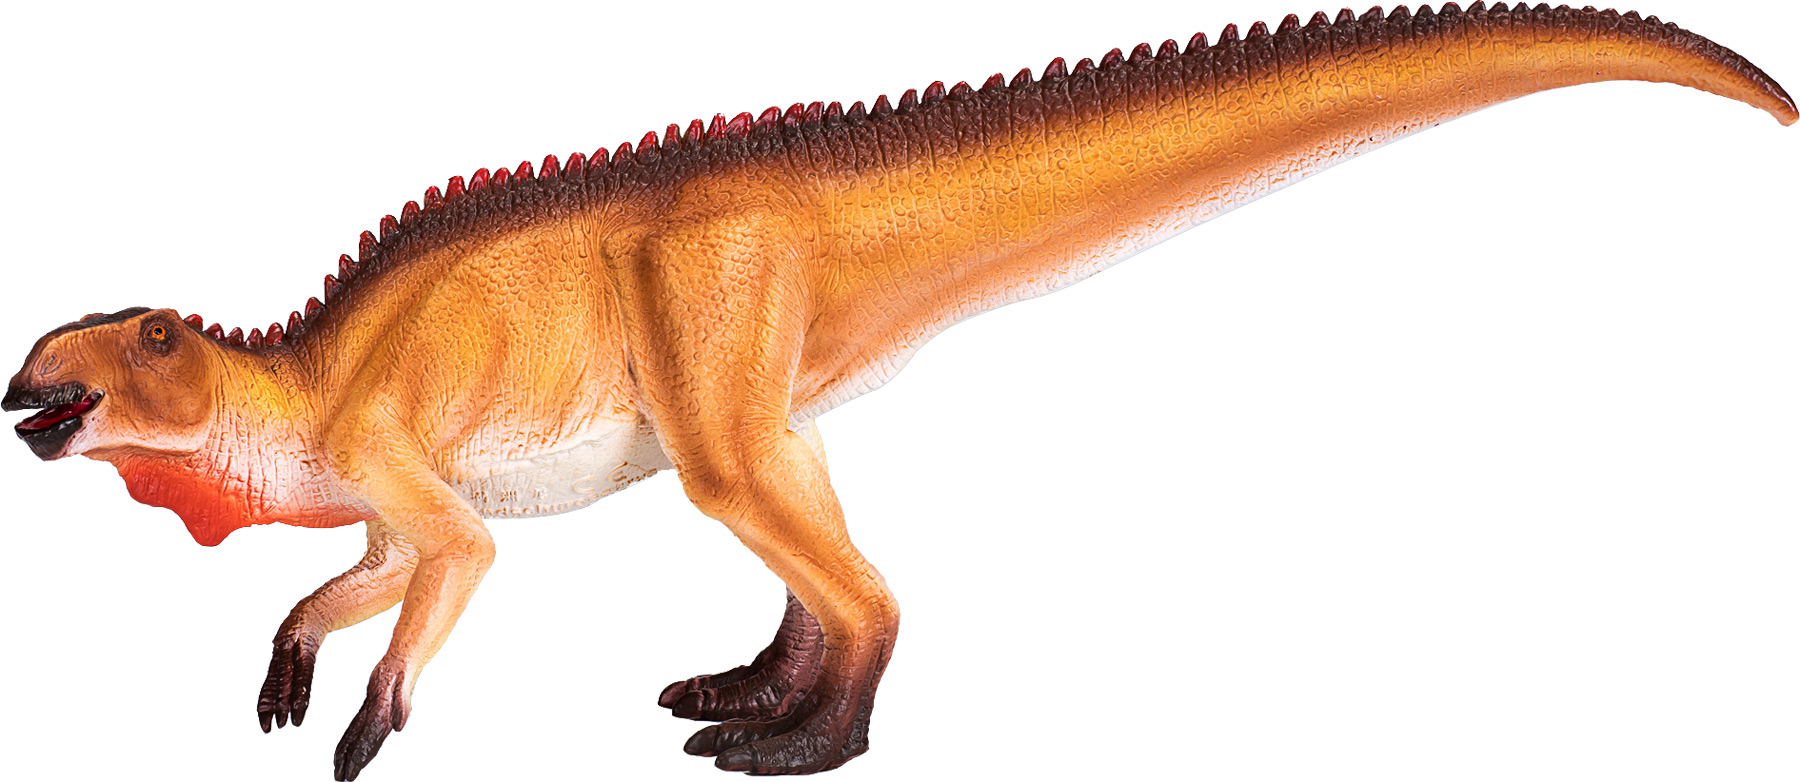 Animal Planet Mandschurosaurus